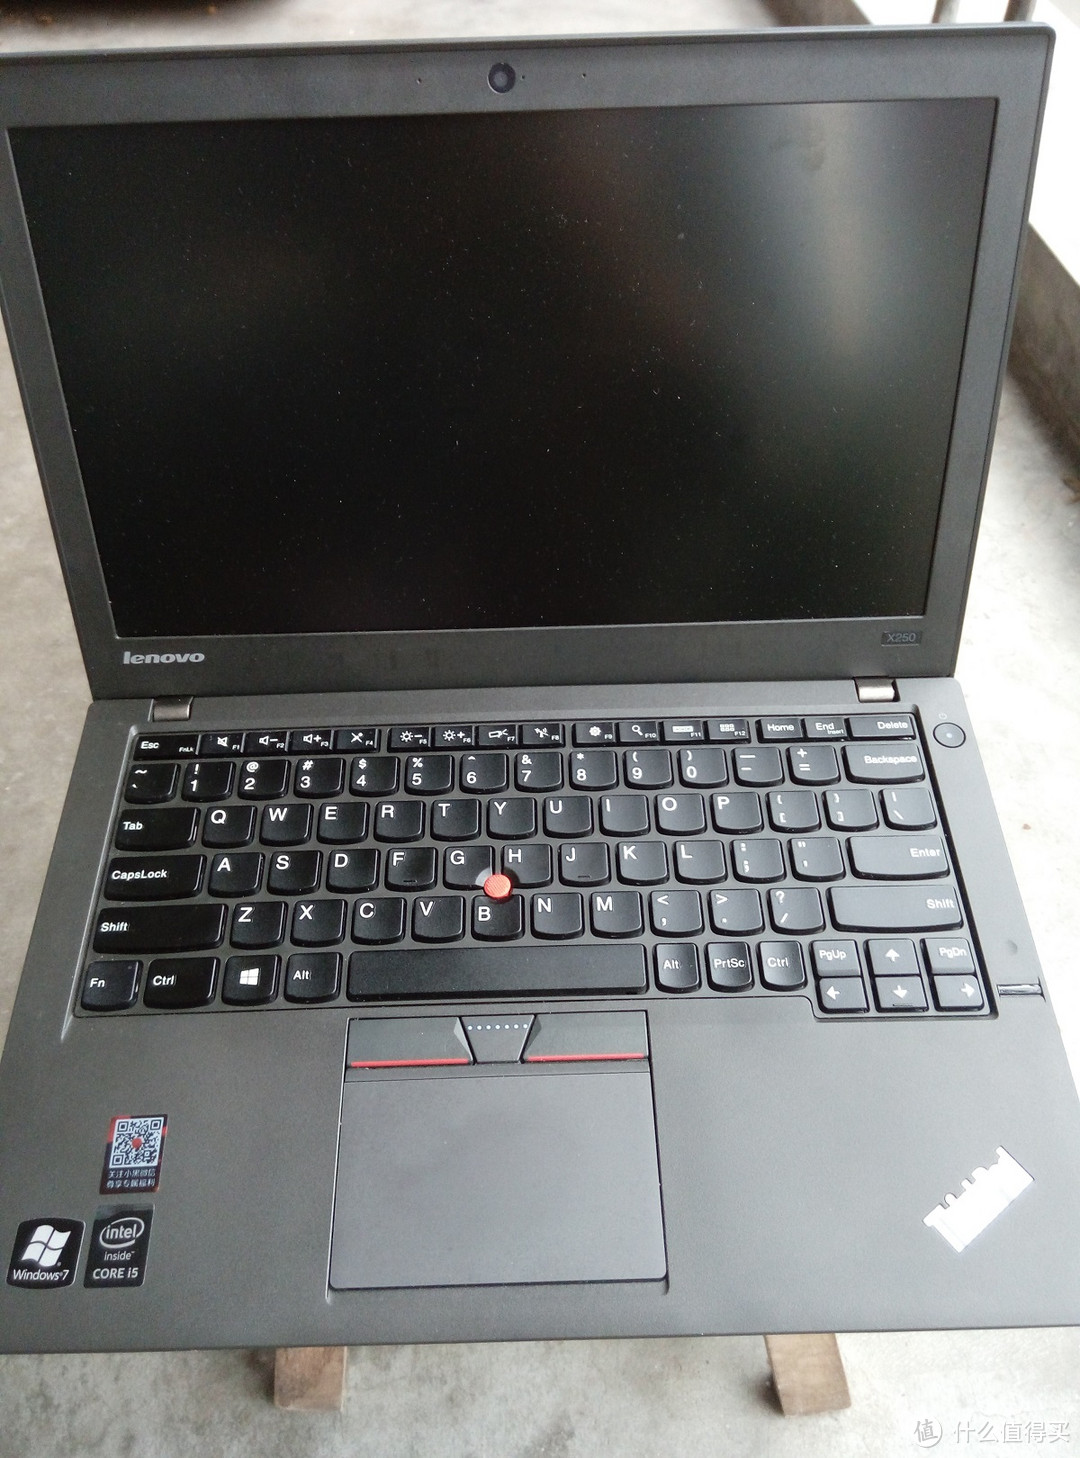 经典的些许回归——ThinkPad X250 评测以及联想收购后的ThinkPad品牌变化